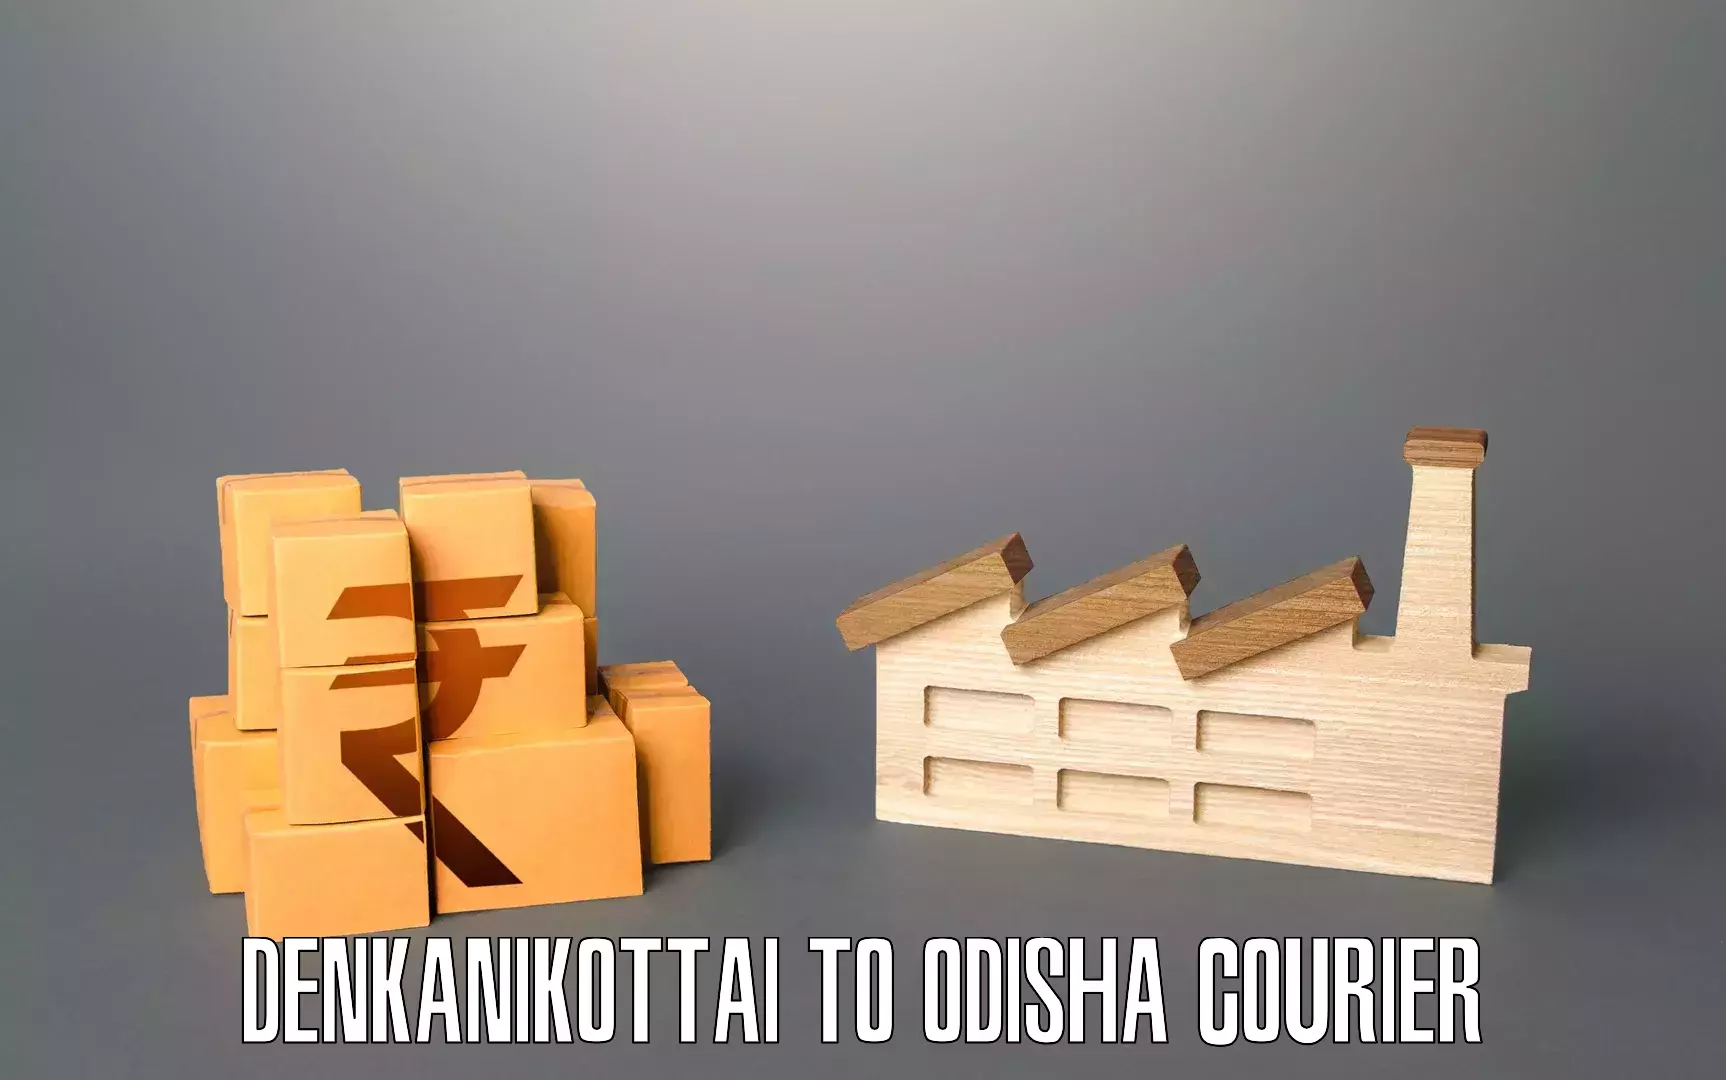 Residential furniture transport Denkanikottai to Balijhari